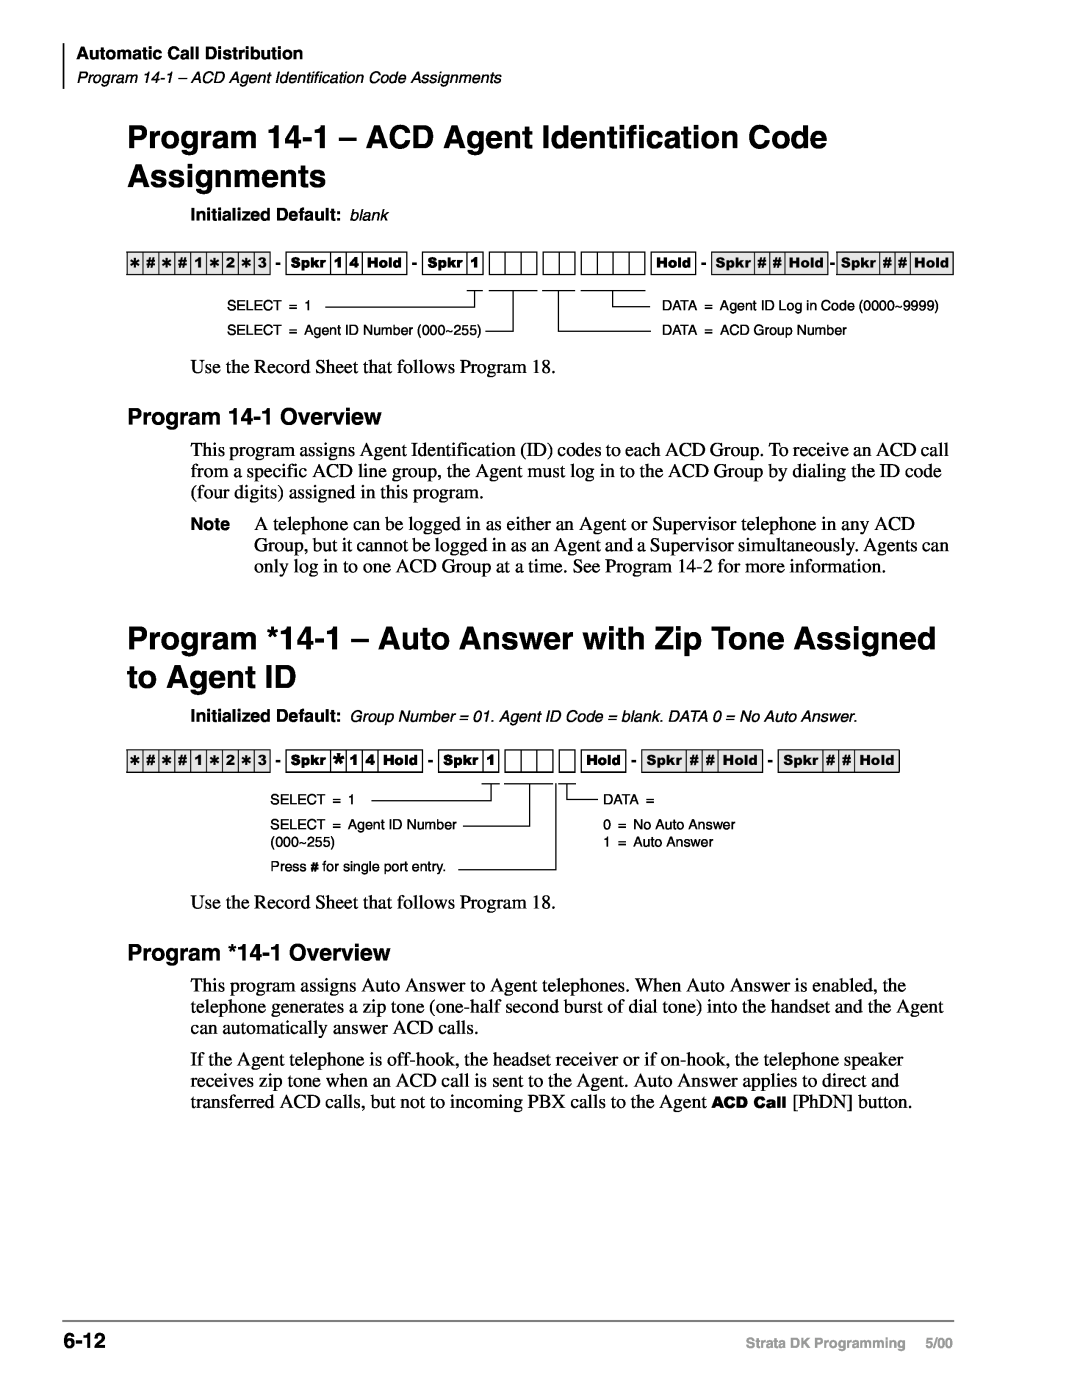 Toshiba DK40I Program 14-1– ACD Agent Identification Code, Program 14-1Overview, Program *14-1Overview, 6-12, Assignments 